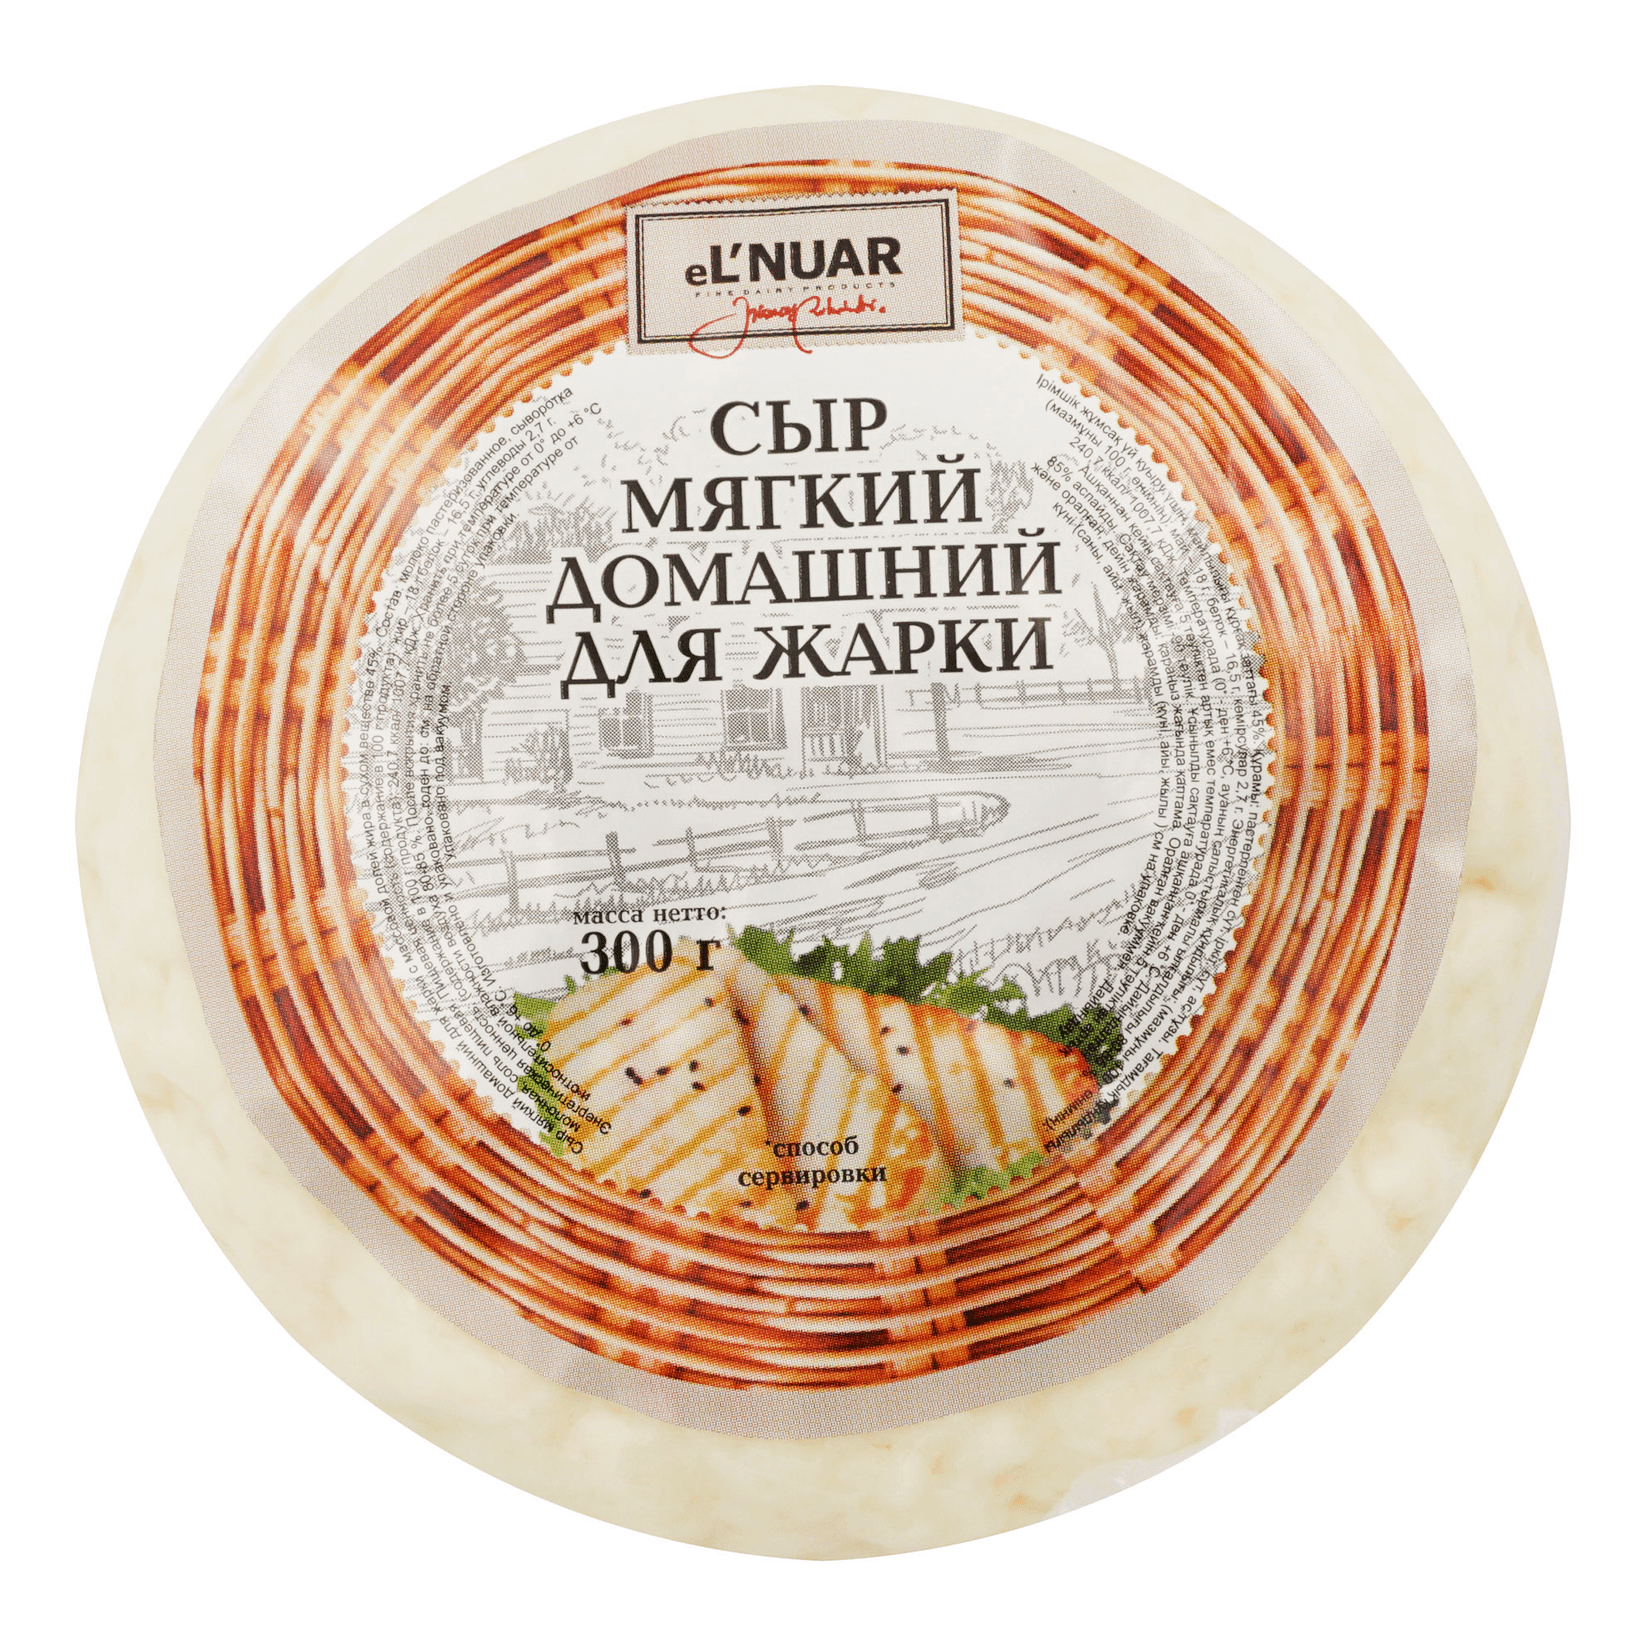 Домашний мягкий сыр eL`NATUR для жарки, 300 г